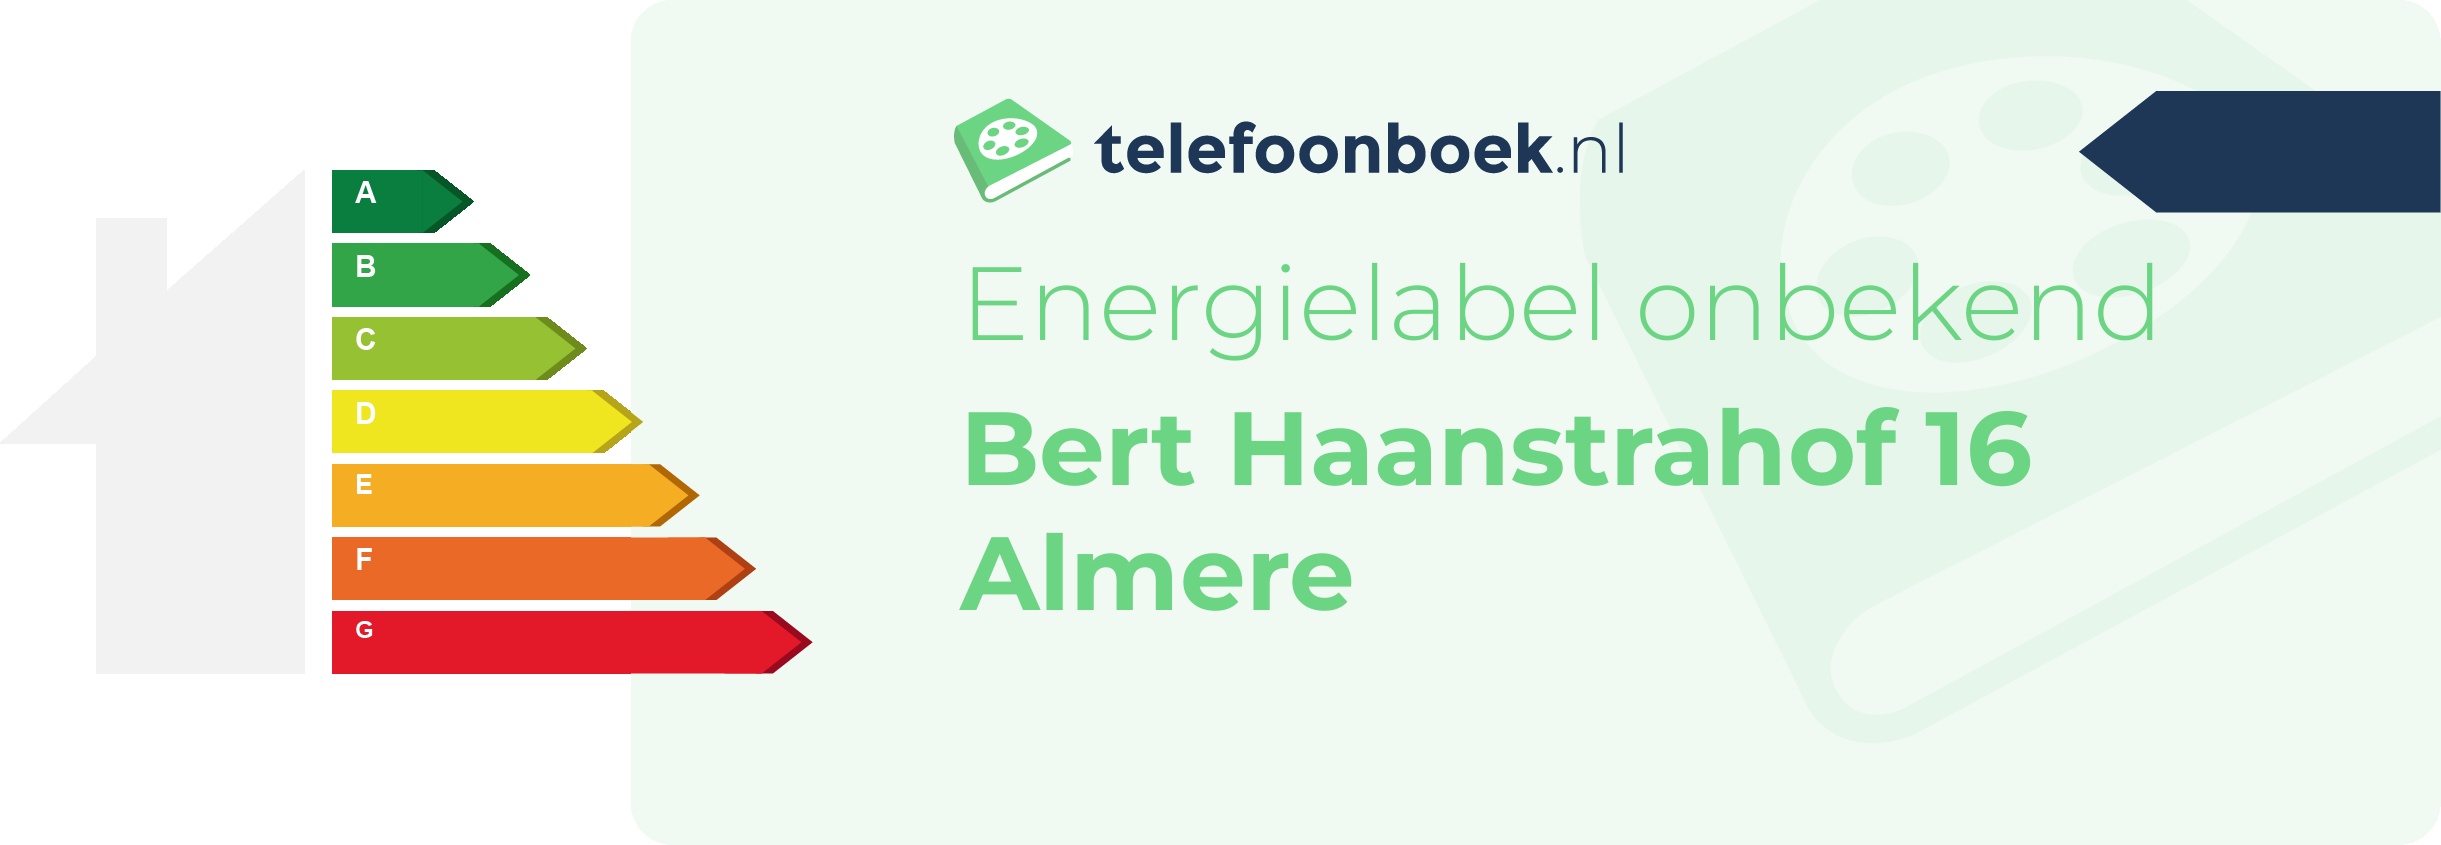 Energielabel Bert Haanstrahof 16 Almere